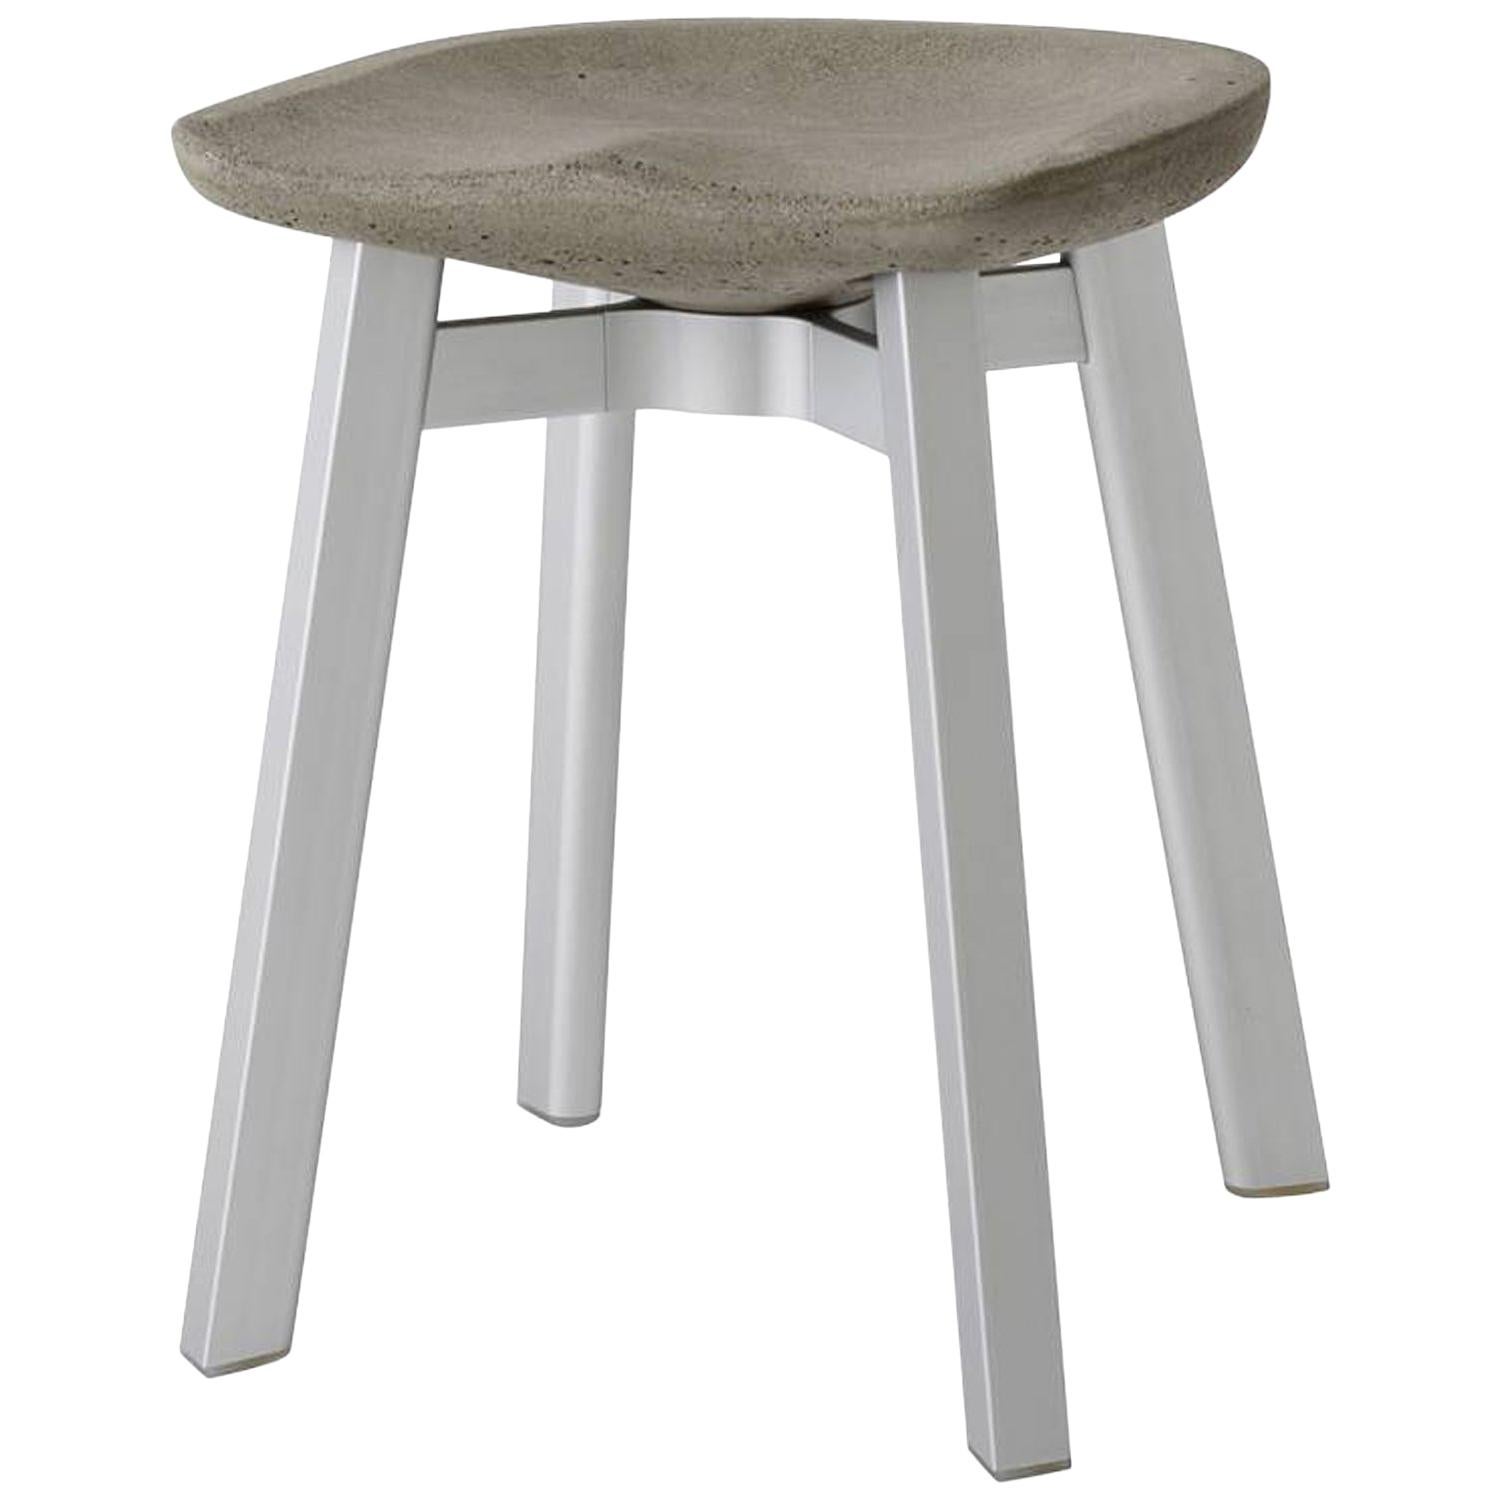 Emeco Su Small Stool in Natural Aluminum w/ Eco Concrete Seat by Nendo